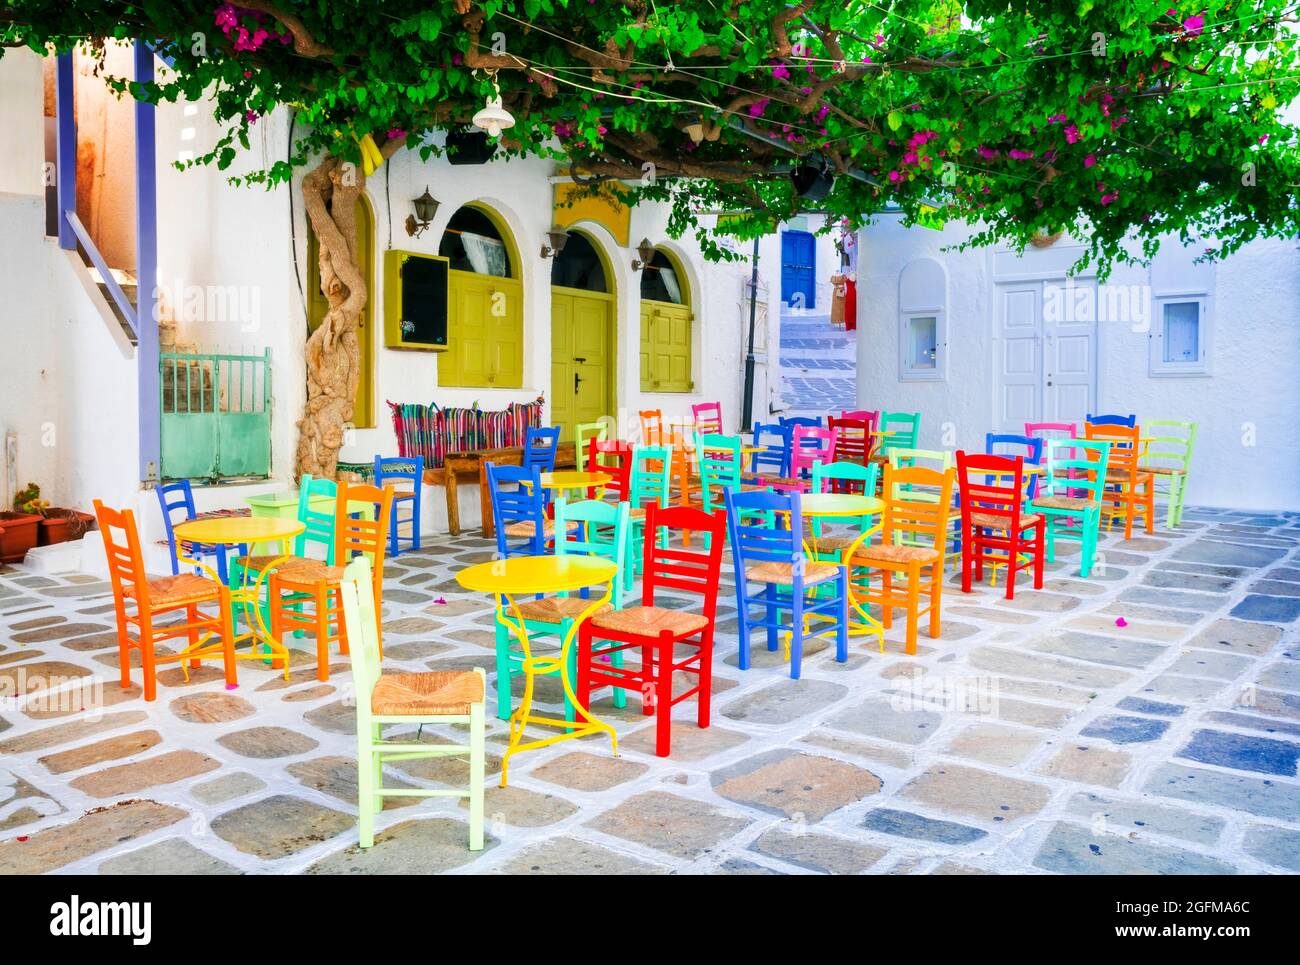 Taverne greche tradizionali per le strade. Isola di iOS, città vecchia di Chora. Ristorante con sedie tipiche colorate. CICLADI, Grecia Foto Stock